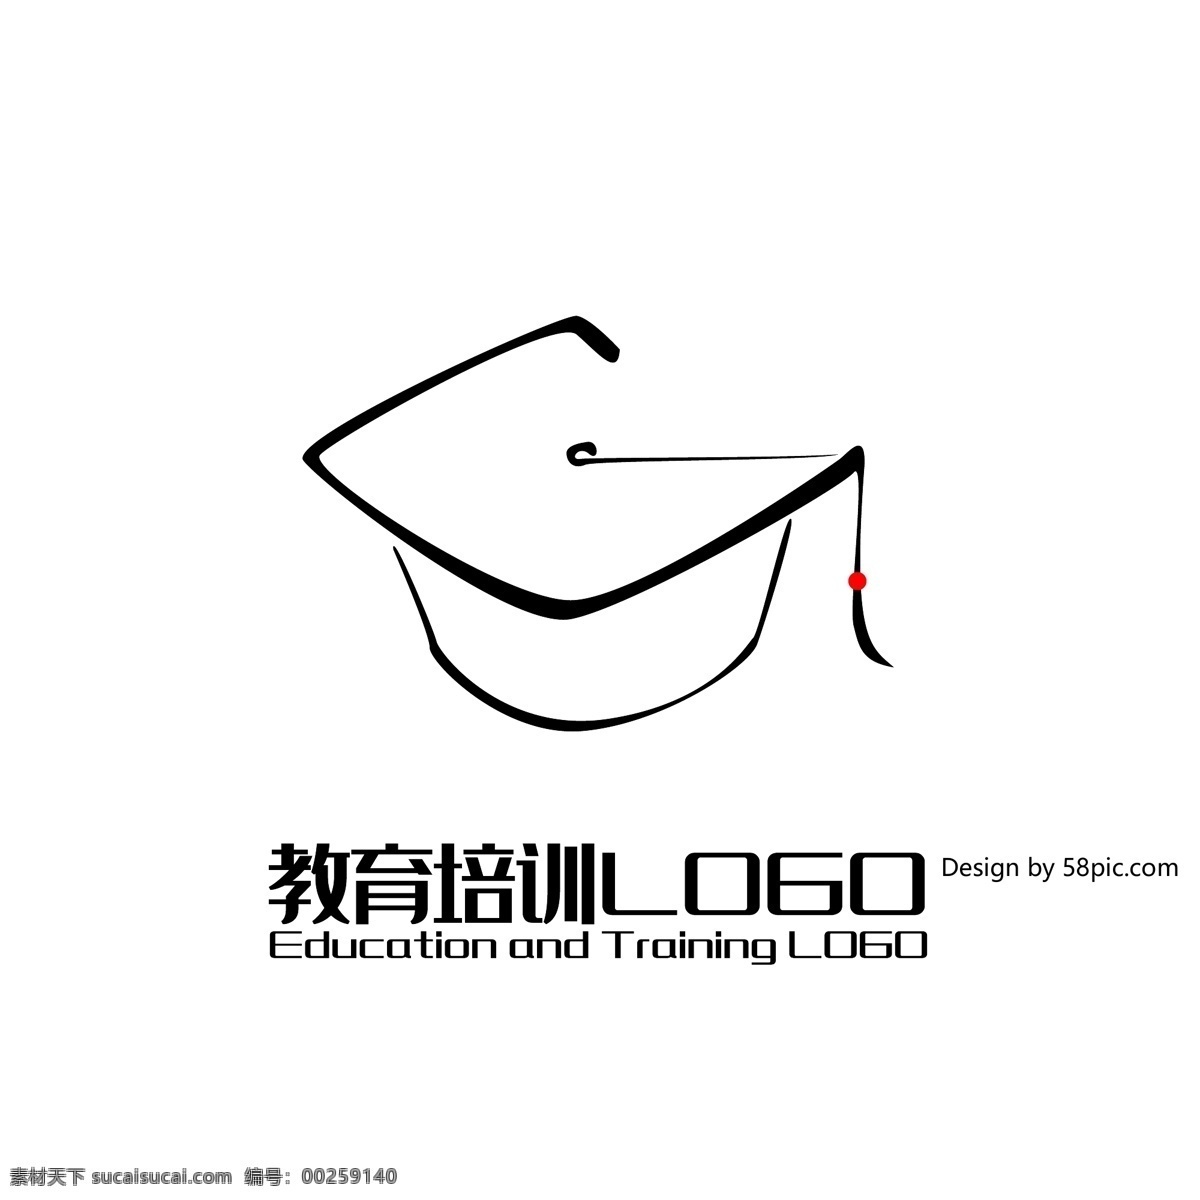 原创 手绘 g 字 大学 帽子 培训班 教育 logo 可商用 简约 大学帽子 博士帽 标志 g字 字体设计